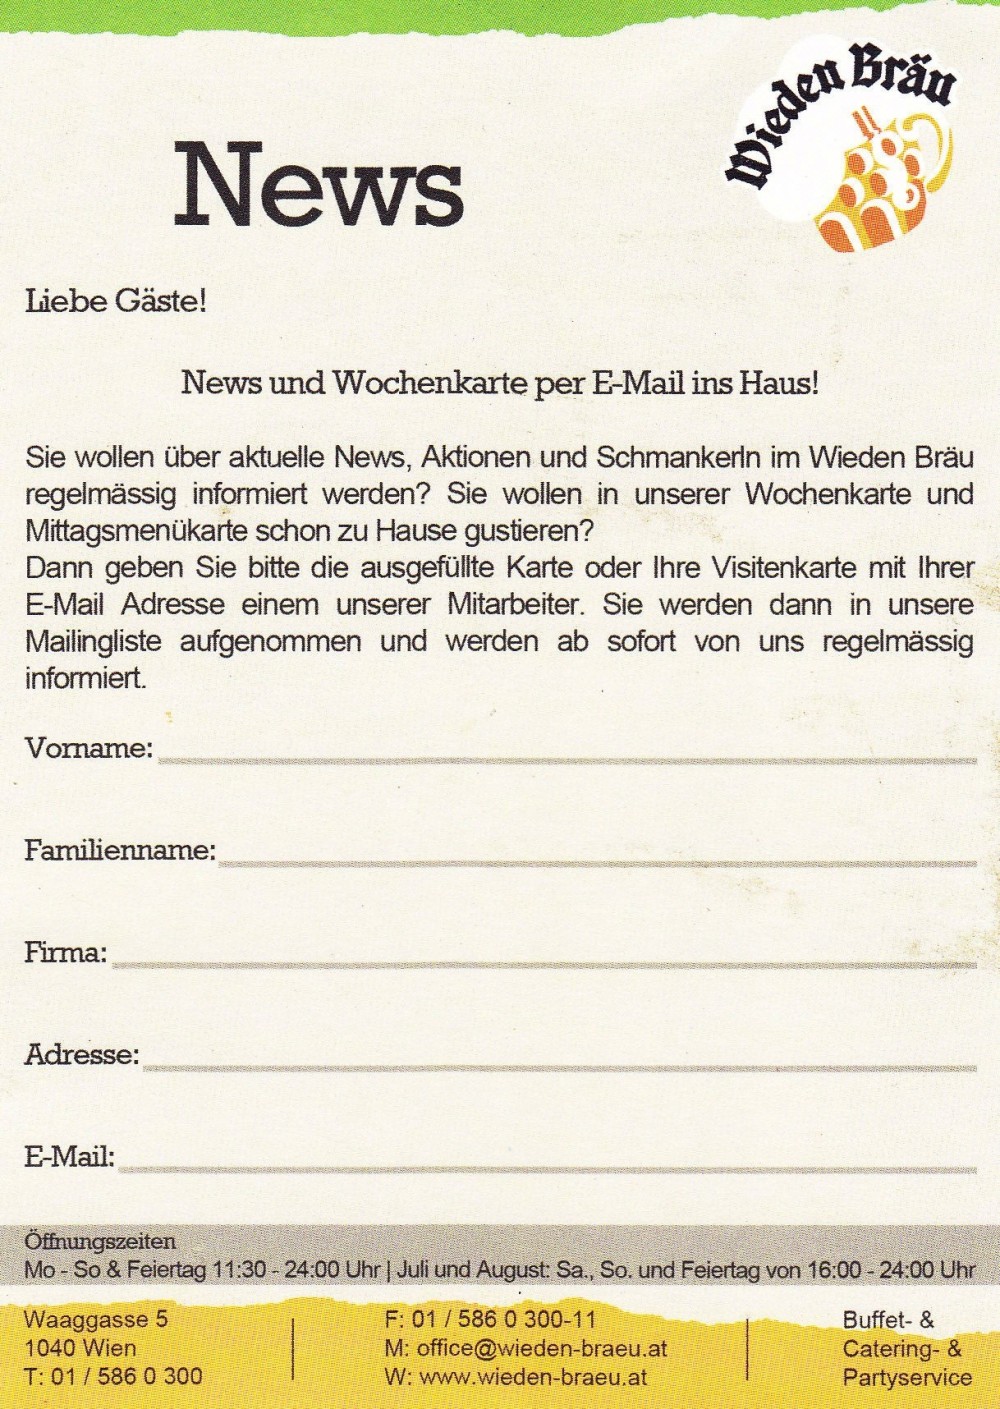 Wieden Bräu Newsletter - Wieden Bräu - Wien